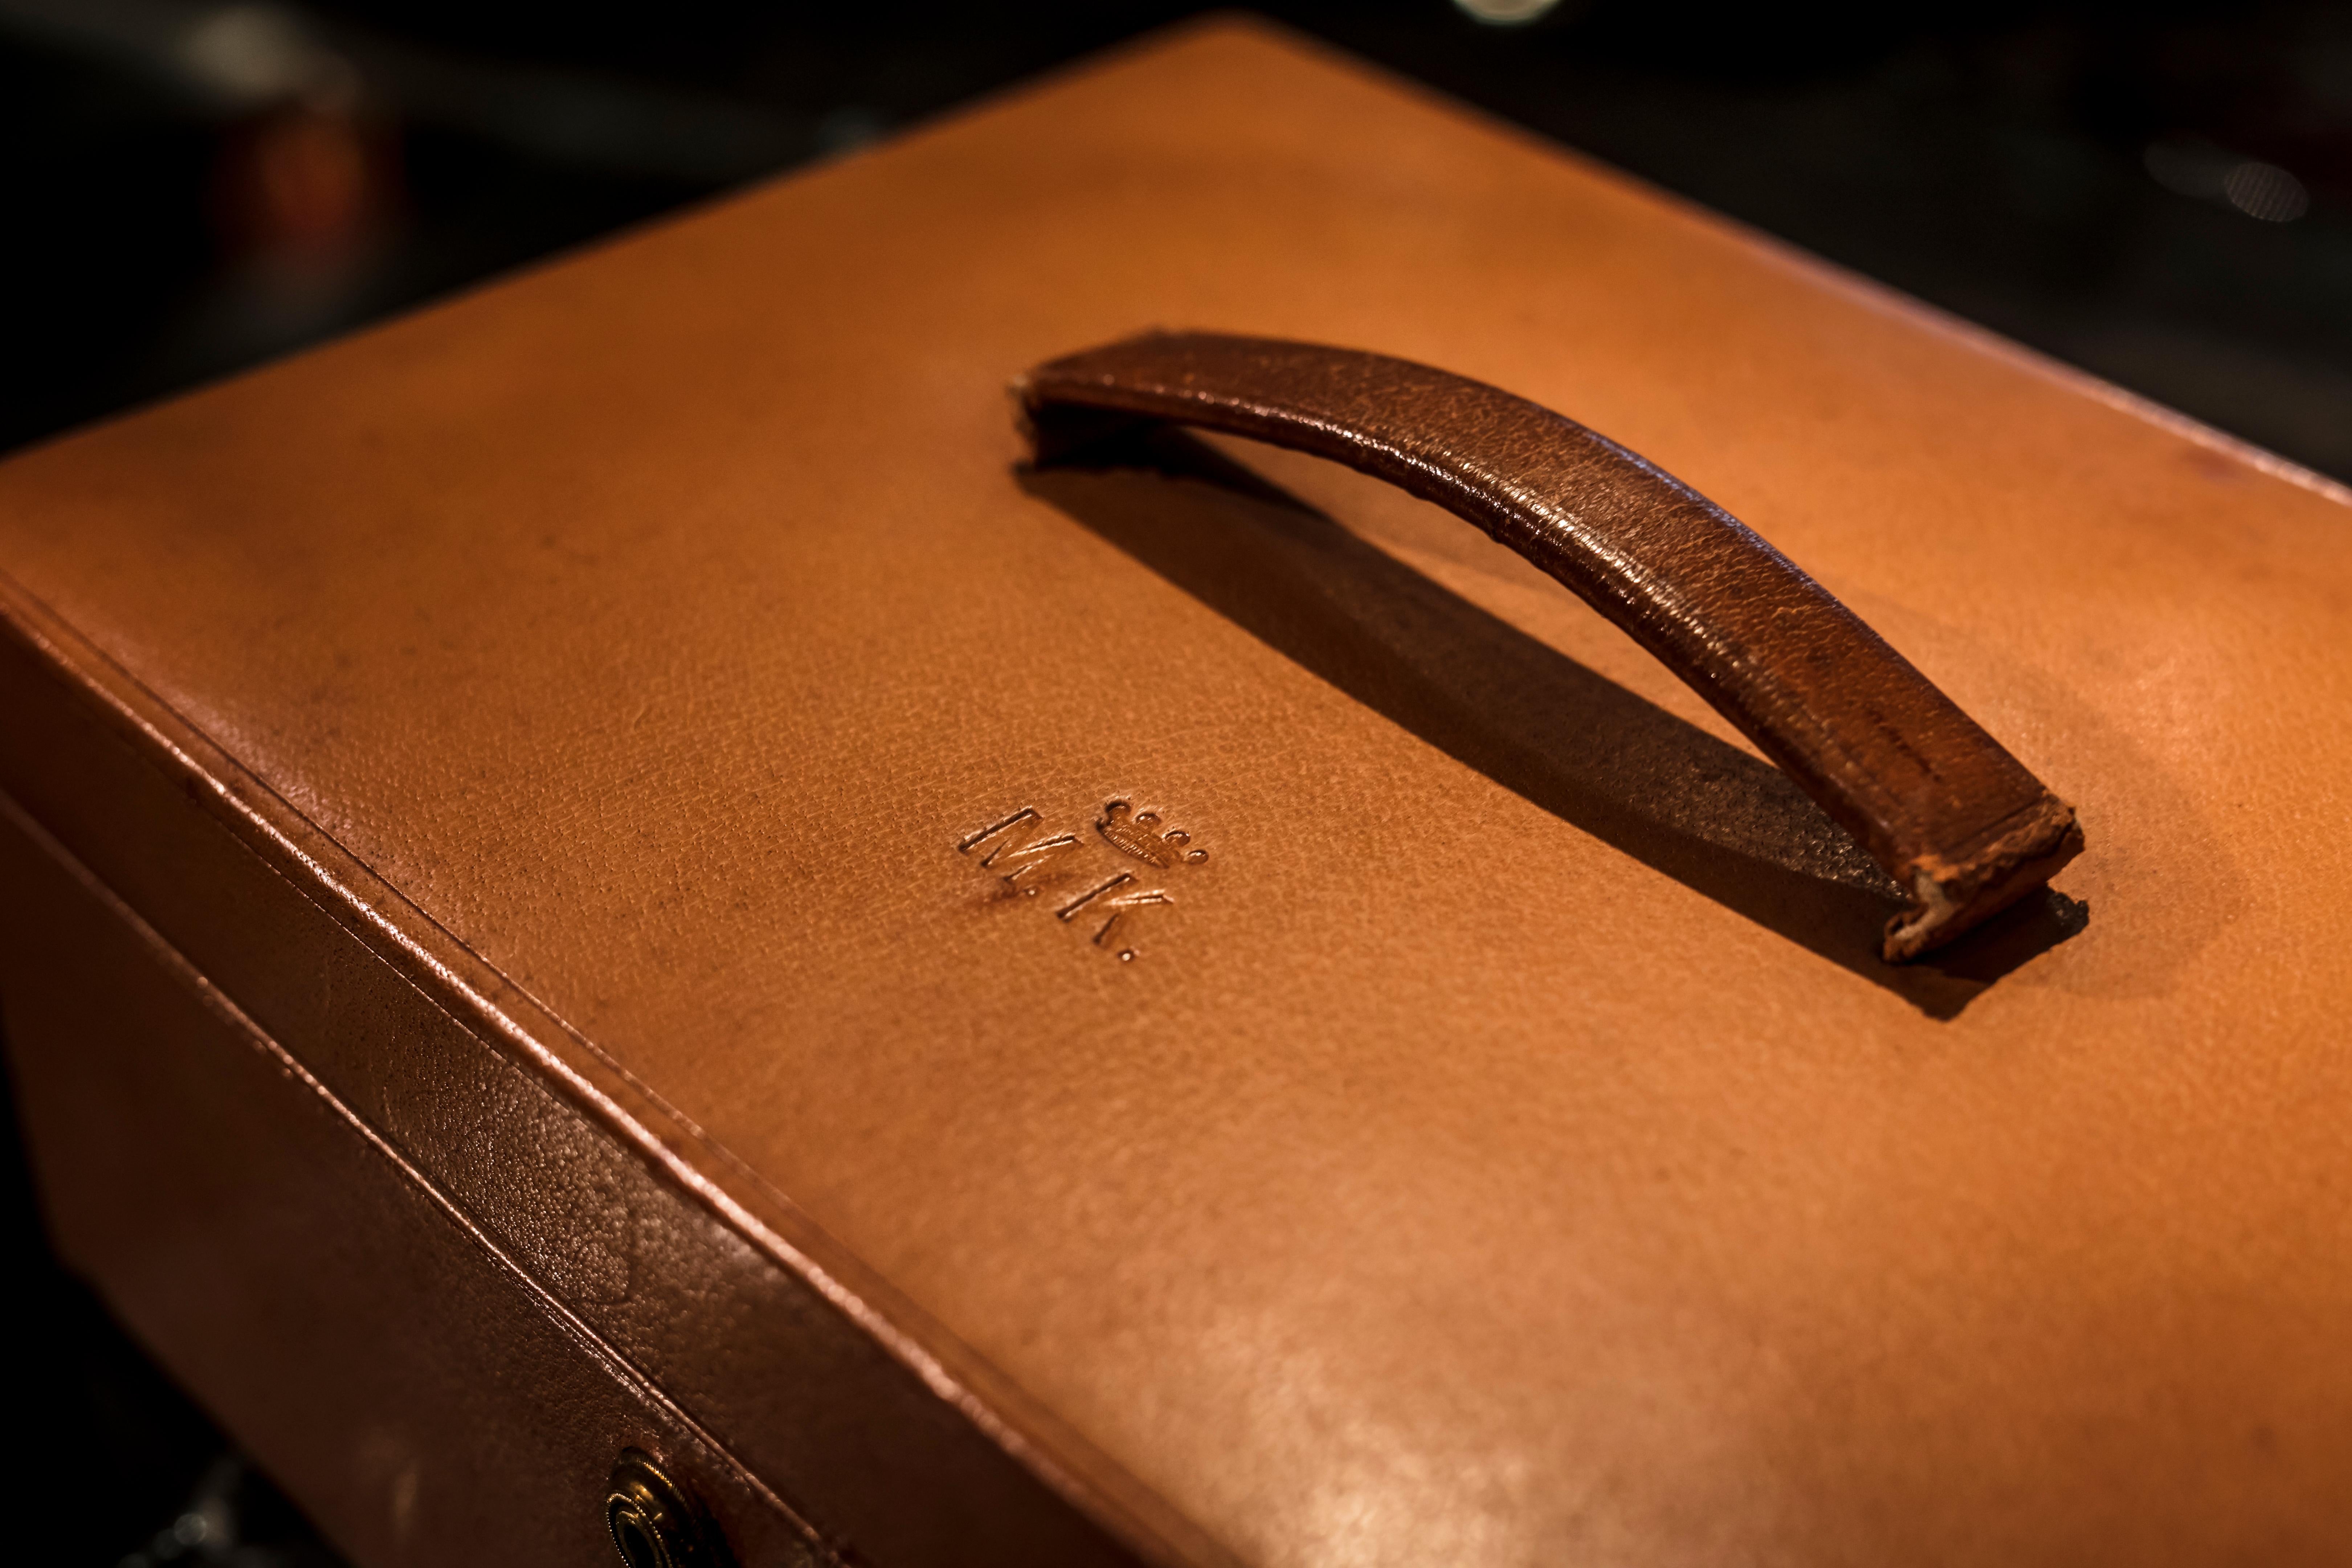 Dokumentenbox aus Leder von J.C Vickery, Regent Street W, London
Das Originalschloss mit Schlüssel trägt die Marke Bramah, London
Die Schachtel ist mit natürlichem hellbraunem Leder überzogen, mit einem Griff am Deckel. Unter dem Griff sind eine